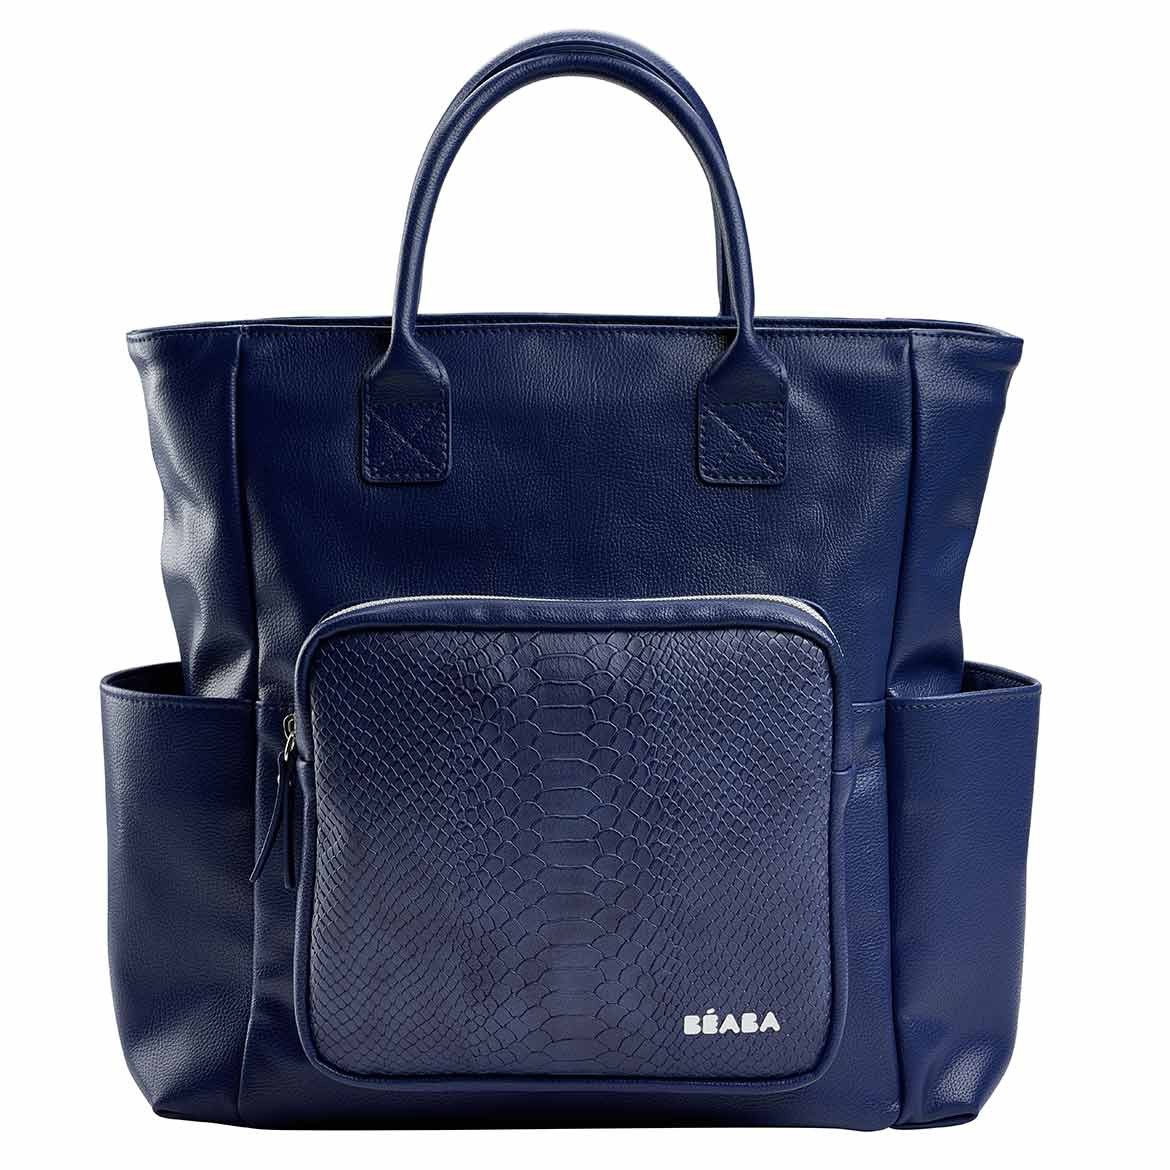 กระเป๋าเปลี่ยนผ้าอ้อม Kyoto Changing Bag - BLUE/SNAKE